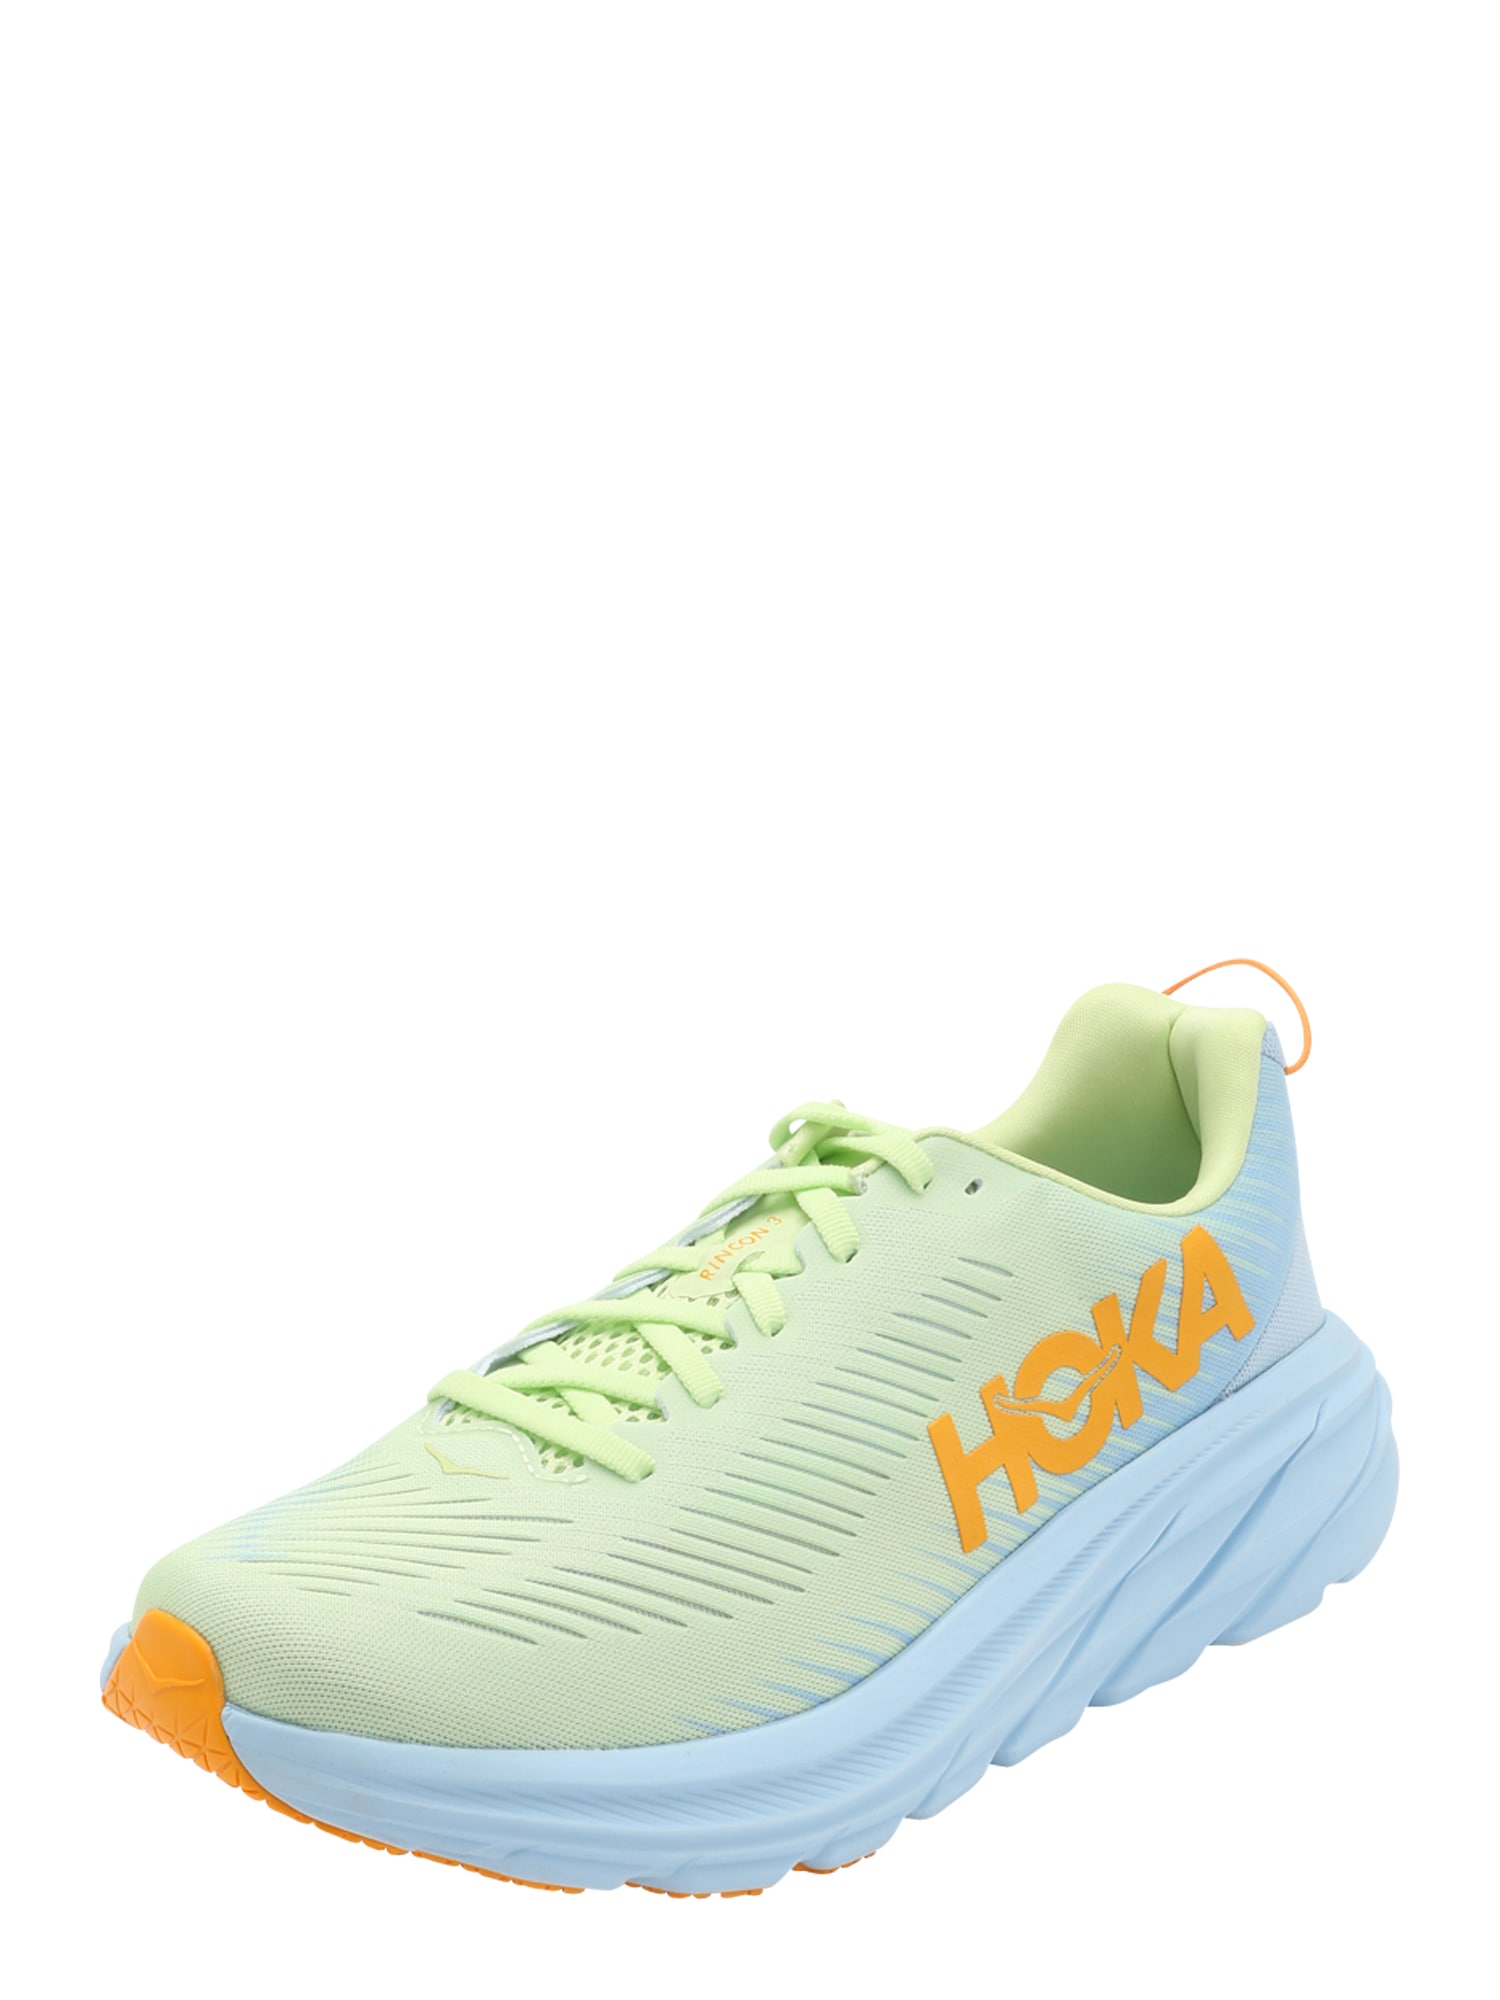 Appeal to be attractive rotary material Hoka One One Bėgimo batai RINCON 3 šviesiai geltona oranžinė šviesiai  mėlyna | HOF.lt